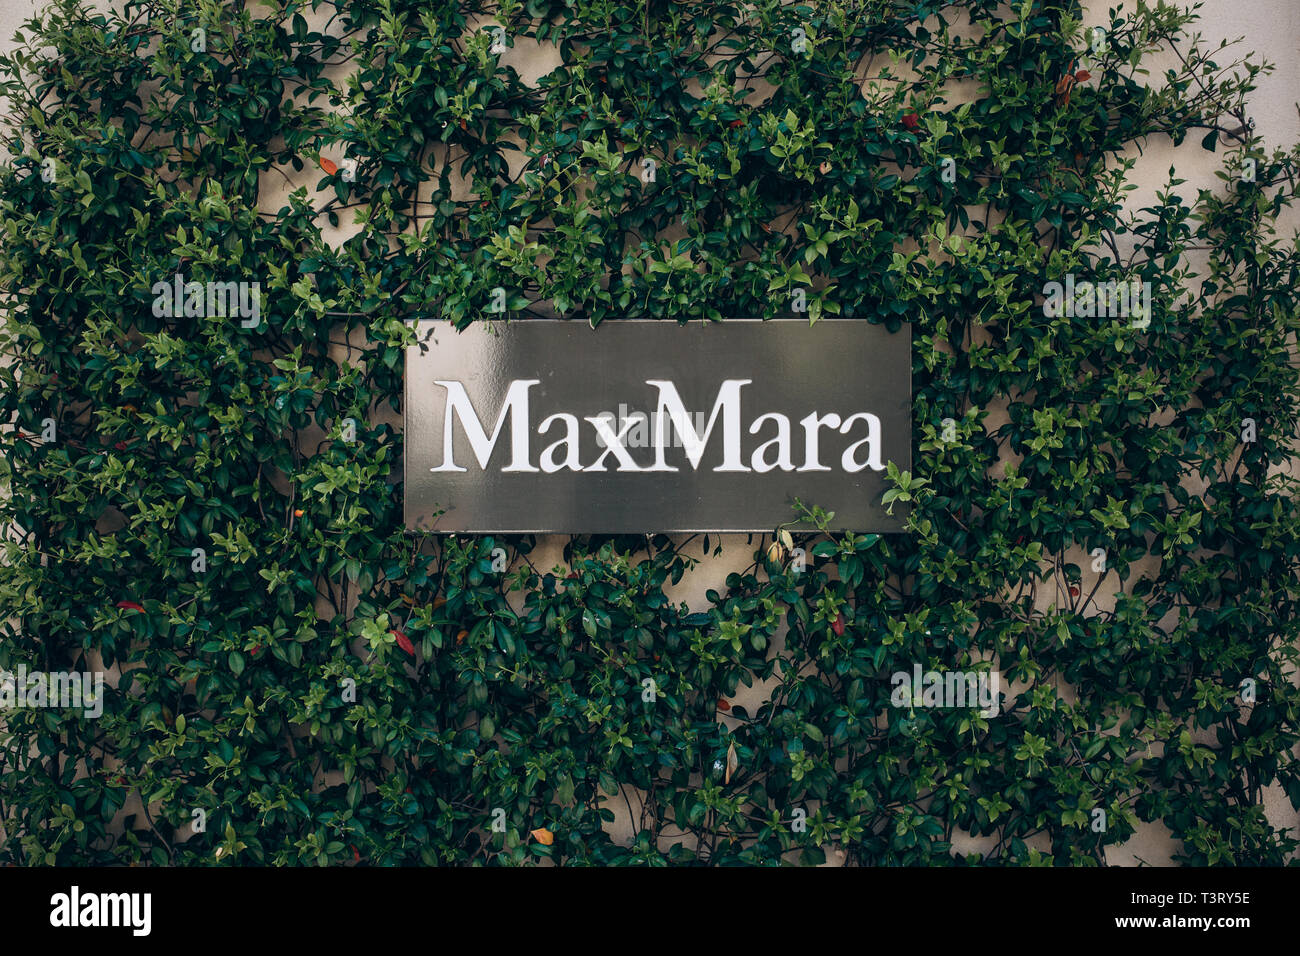 Montenegro, Tivat, Aprile 9, 2019: Strada segno all'ingresso del negozio MaxMara. Marchio italiano e negozio di moda di vestiti e di profumeria. Foto Stock